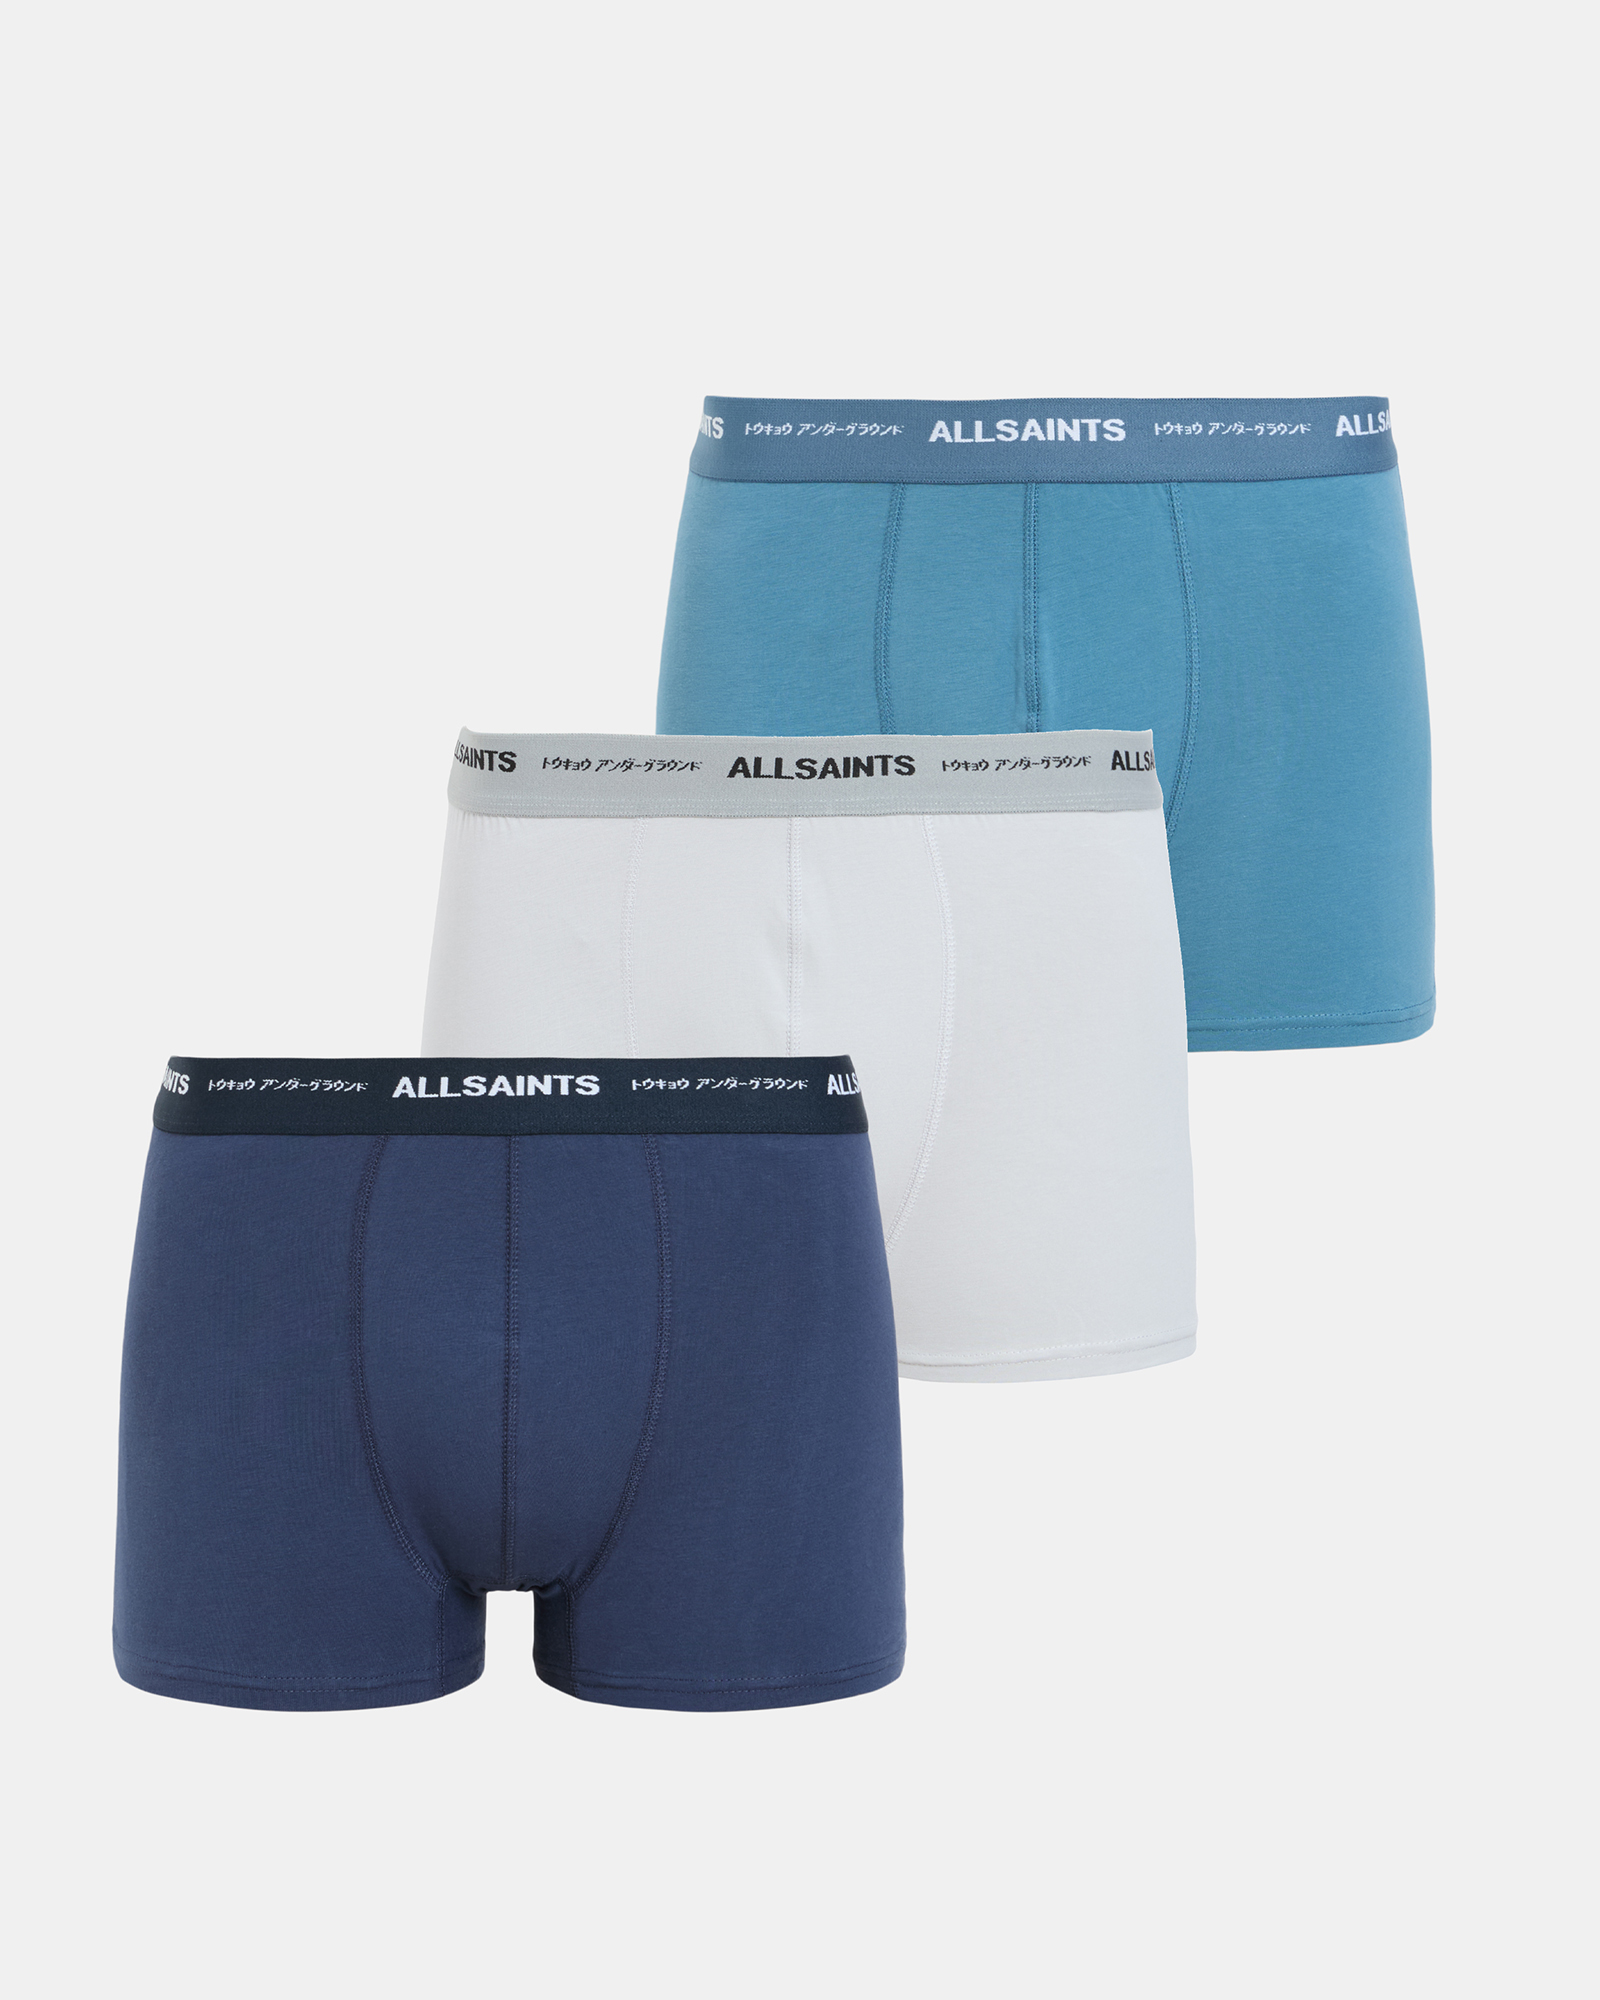 AllSaints Underground Logo Boxers 3 Pack,, Sur Blu/blu/cool G